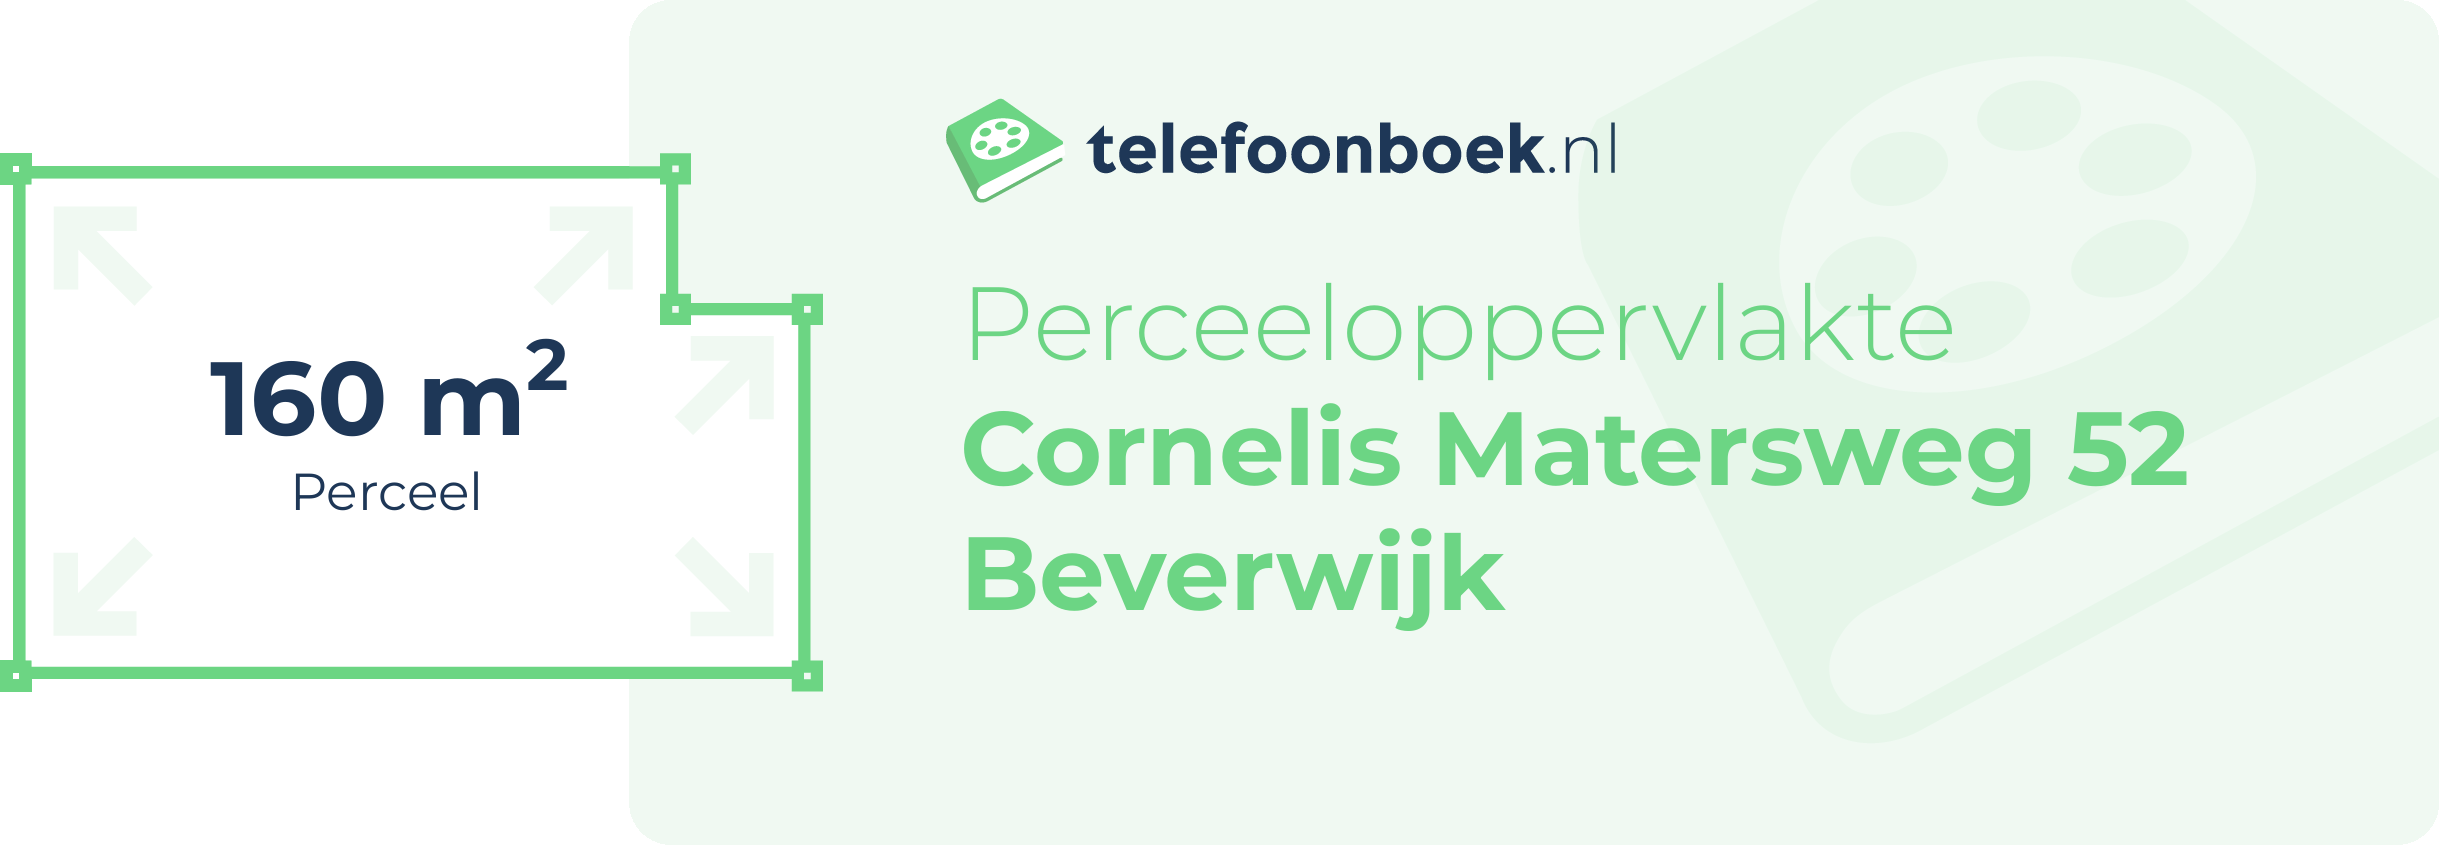 Perceeloppervlakte Cornelis Matersweg 52 Beverwijk